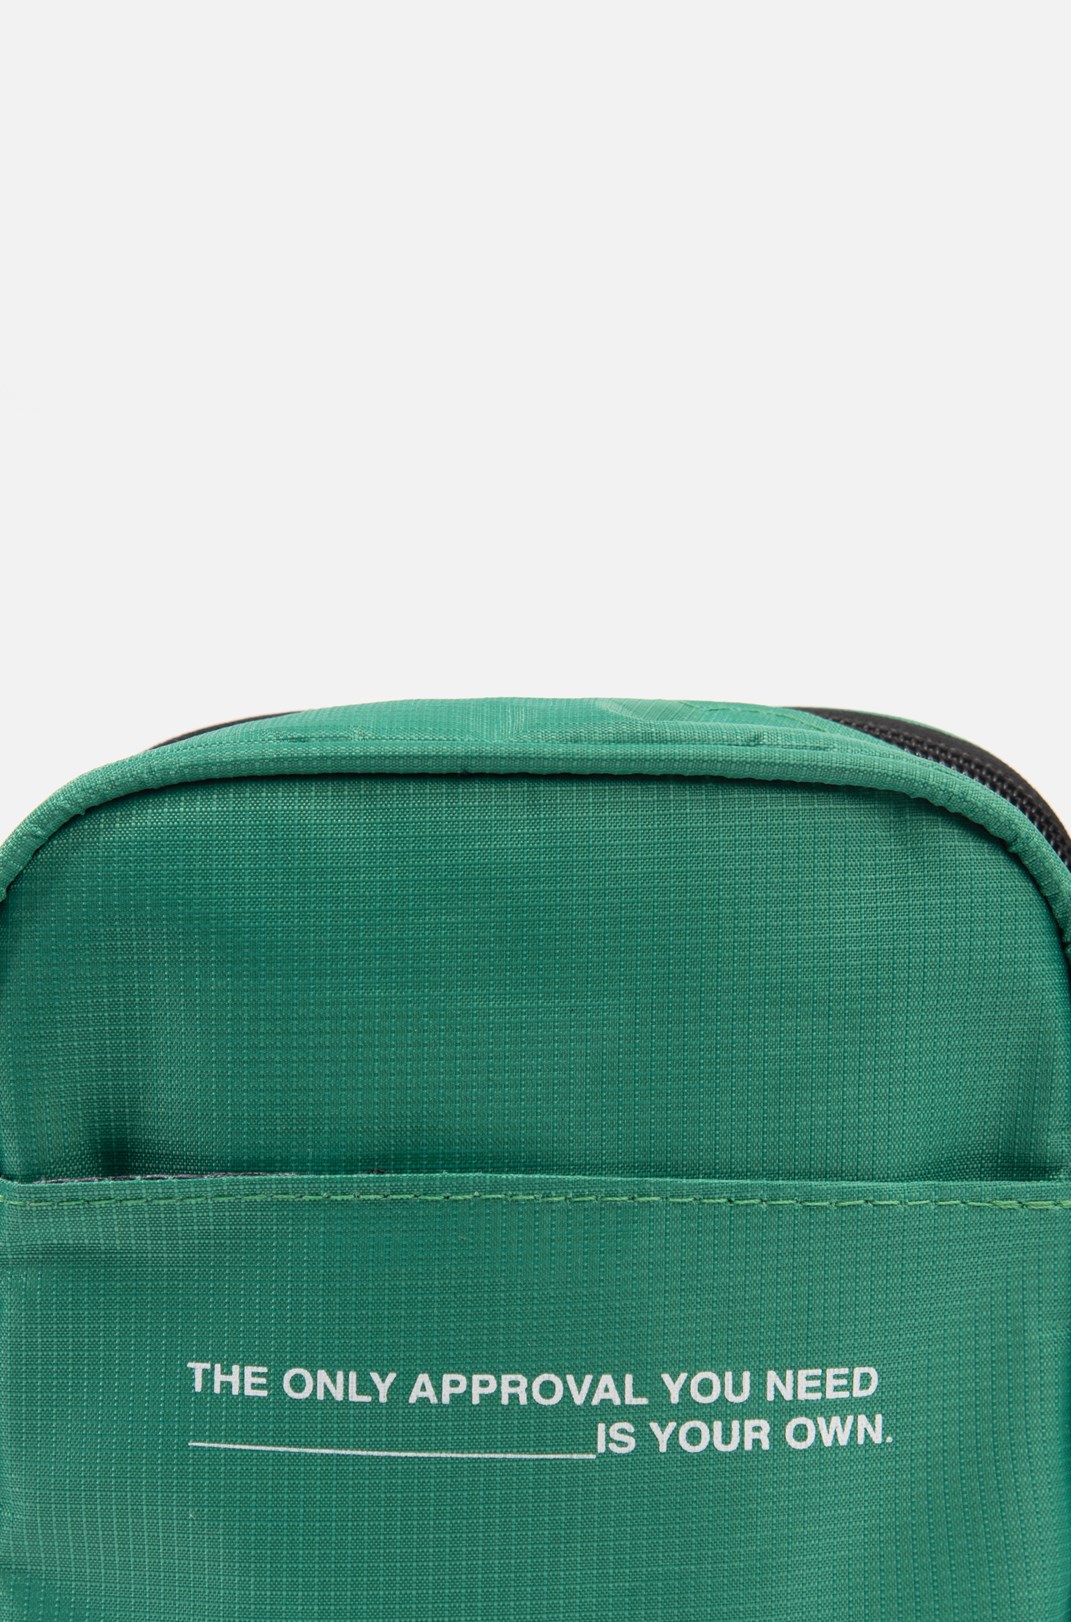 Shoulder Bag Approve Verde